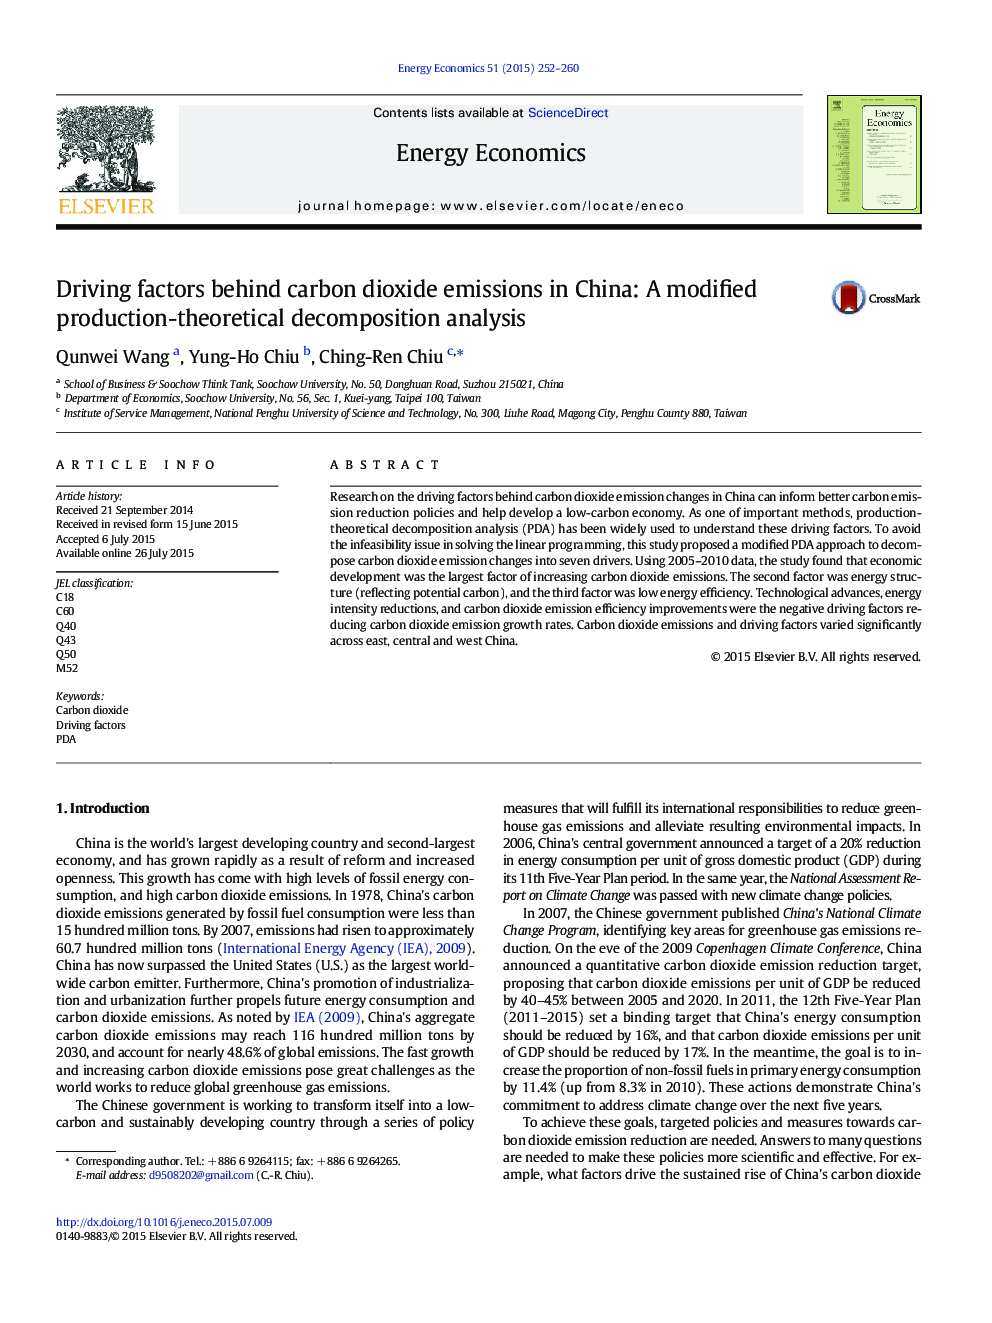 عوامل رانندگی پس از انتشار دی اکسید کربن در چین: تجزیه و تحلیل شکست تجزیه و تحلیل تولید تغییر یافته 